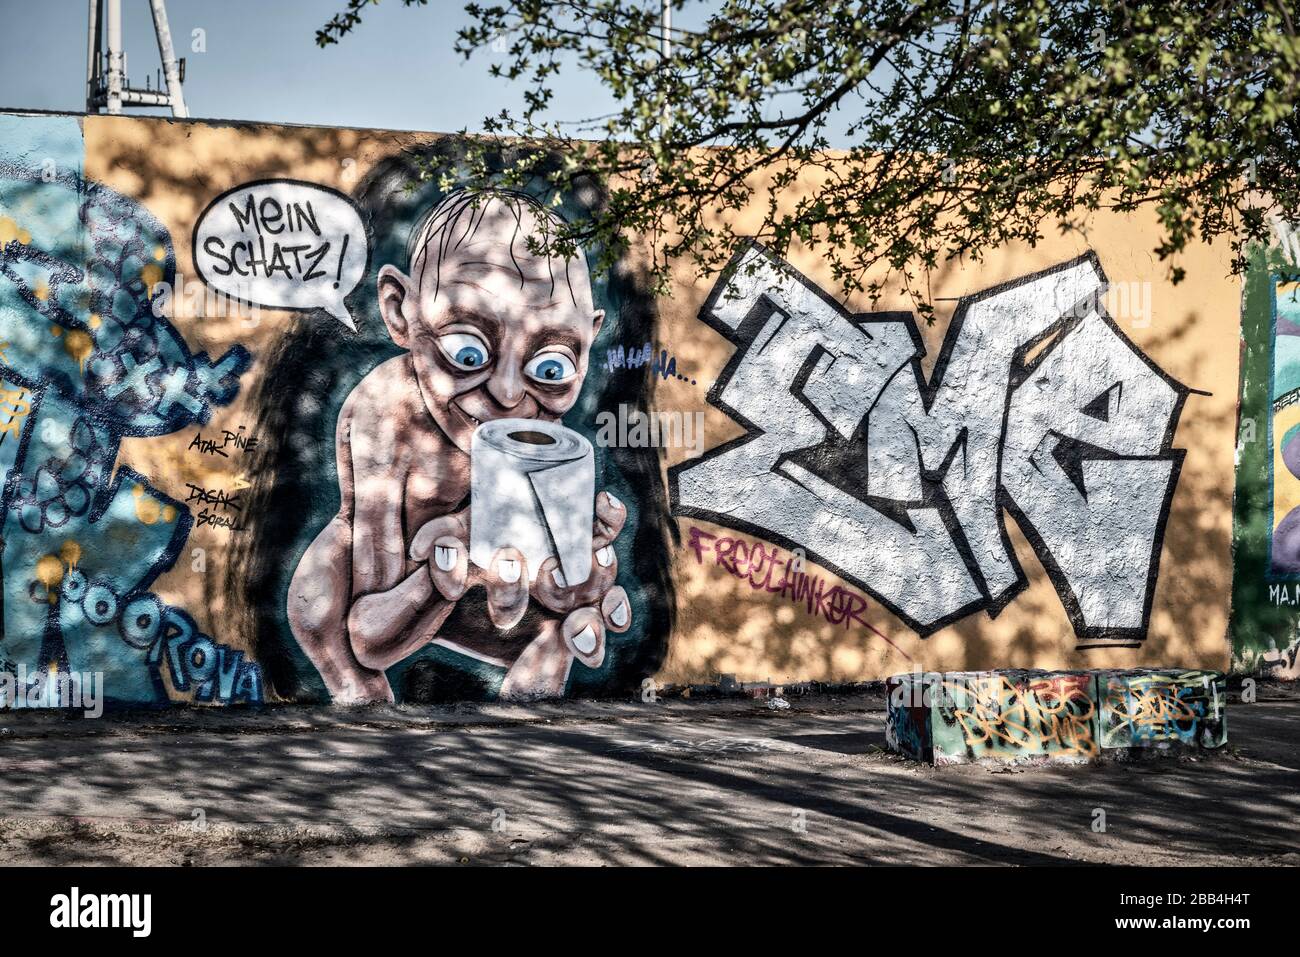 Graffiti Gollum aus Herr der Ringe mit Klopapier und Sprechblase ' Mein Schatz ' anlaesslich der Corona Krise im Mauerpark a Berlino Prenzlauer Berg Foto Stock